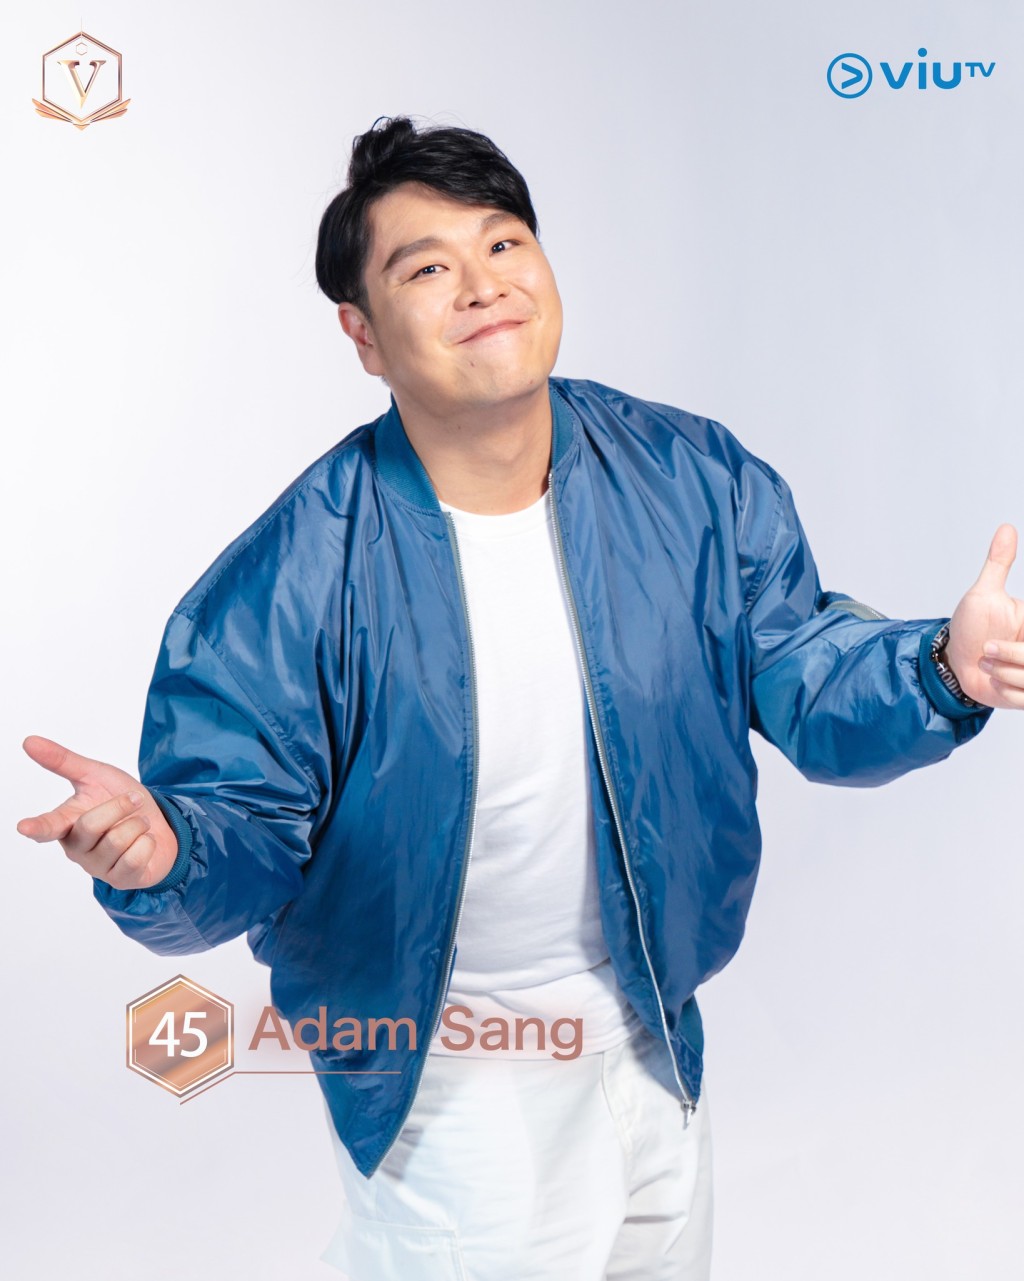 鄭如川（Adam Sang） 年齡： 35 職業： 創作歌手 擅長： 作曲、作詞、自彈自唱、音樂 IG：adam_sang #吉隆坡參賽者